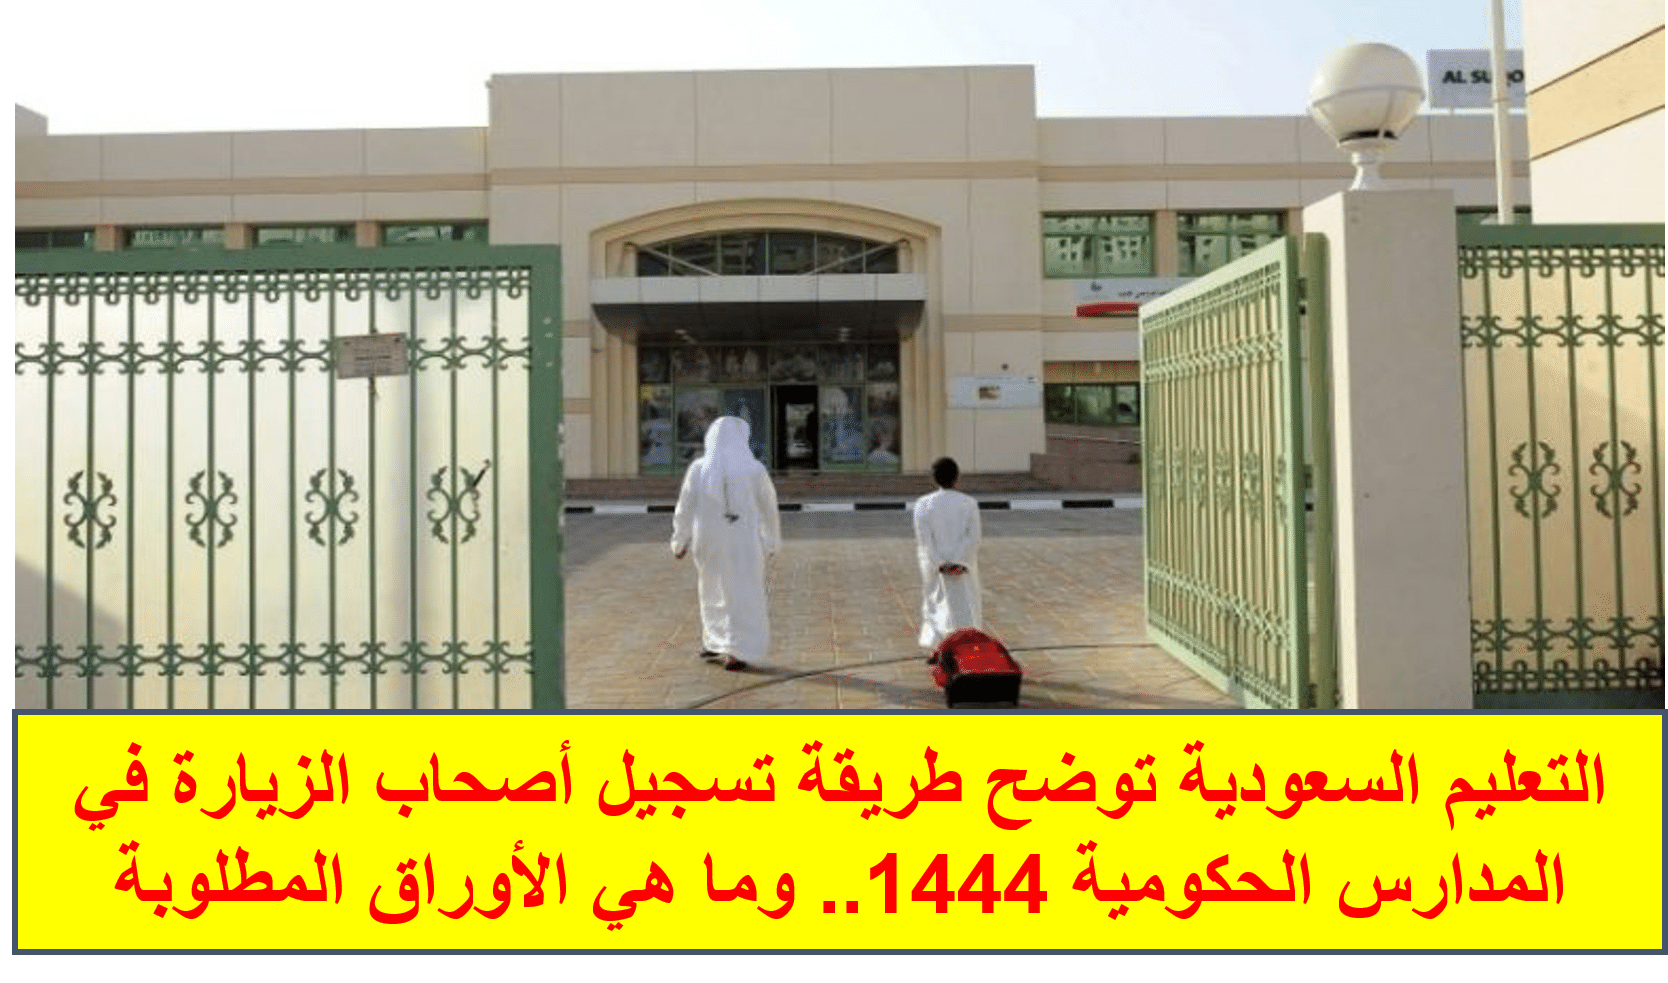 التعليم السعودية توضح طريقة تسجيل أصحاب الزيارة في المدارس الحكومية 1444.. وما هي الأوراق المطلوبة